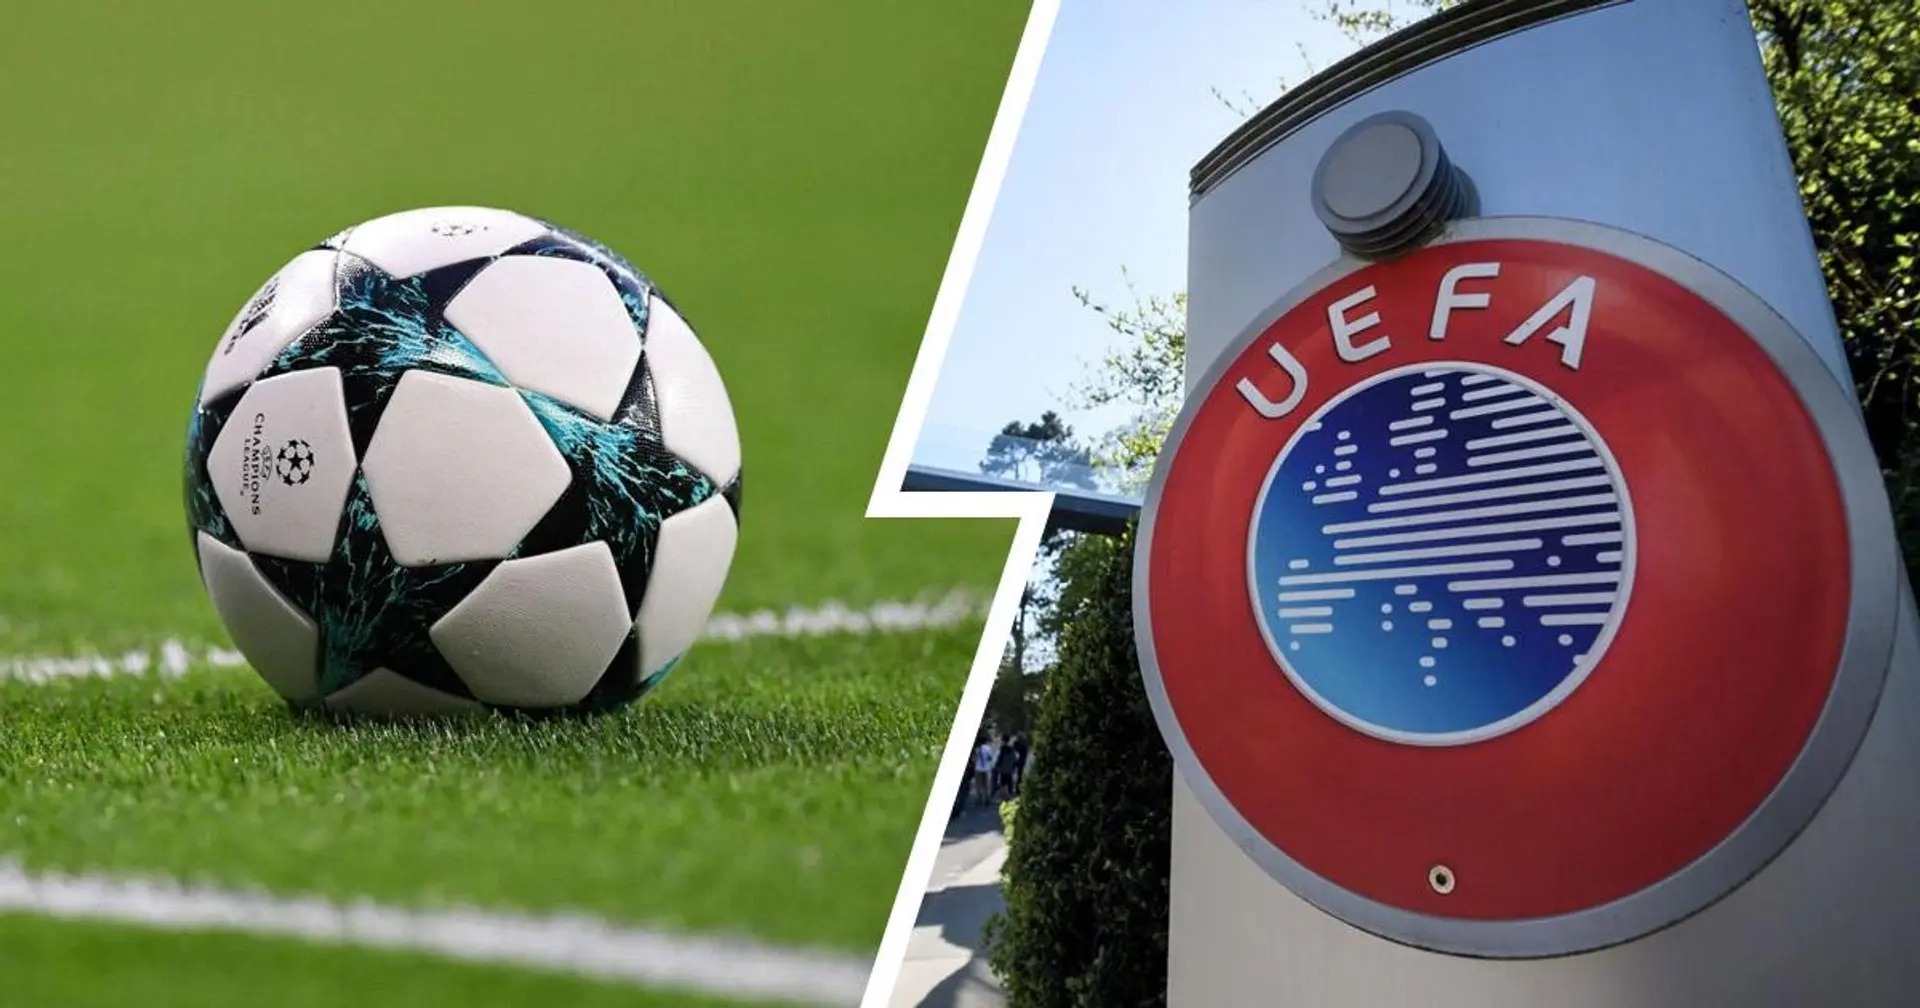 Officiel: l'UEFA supprime la règle du but à l'extérieur à partir de la saison 2021/22